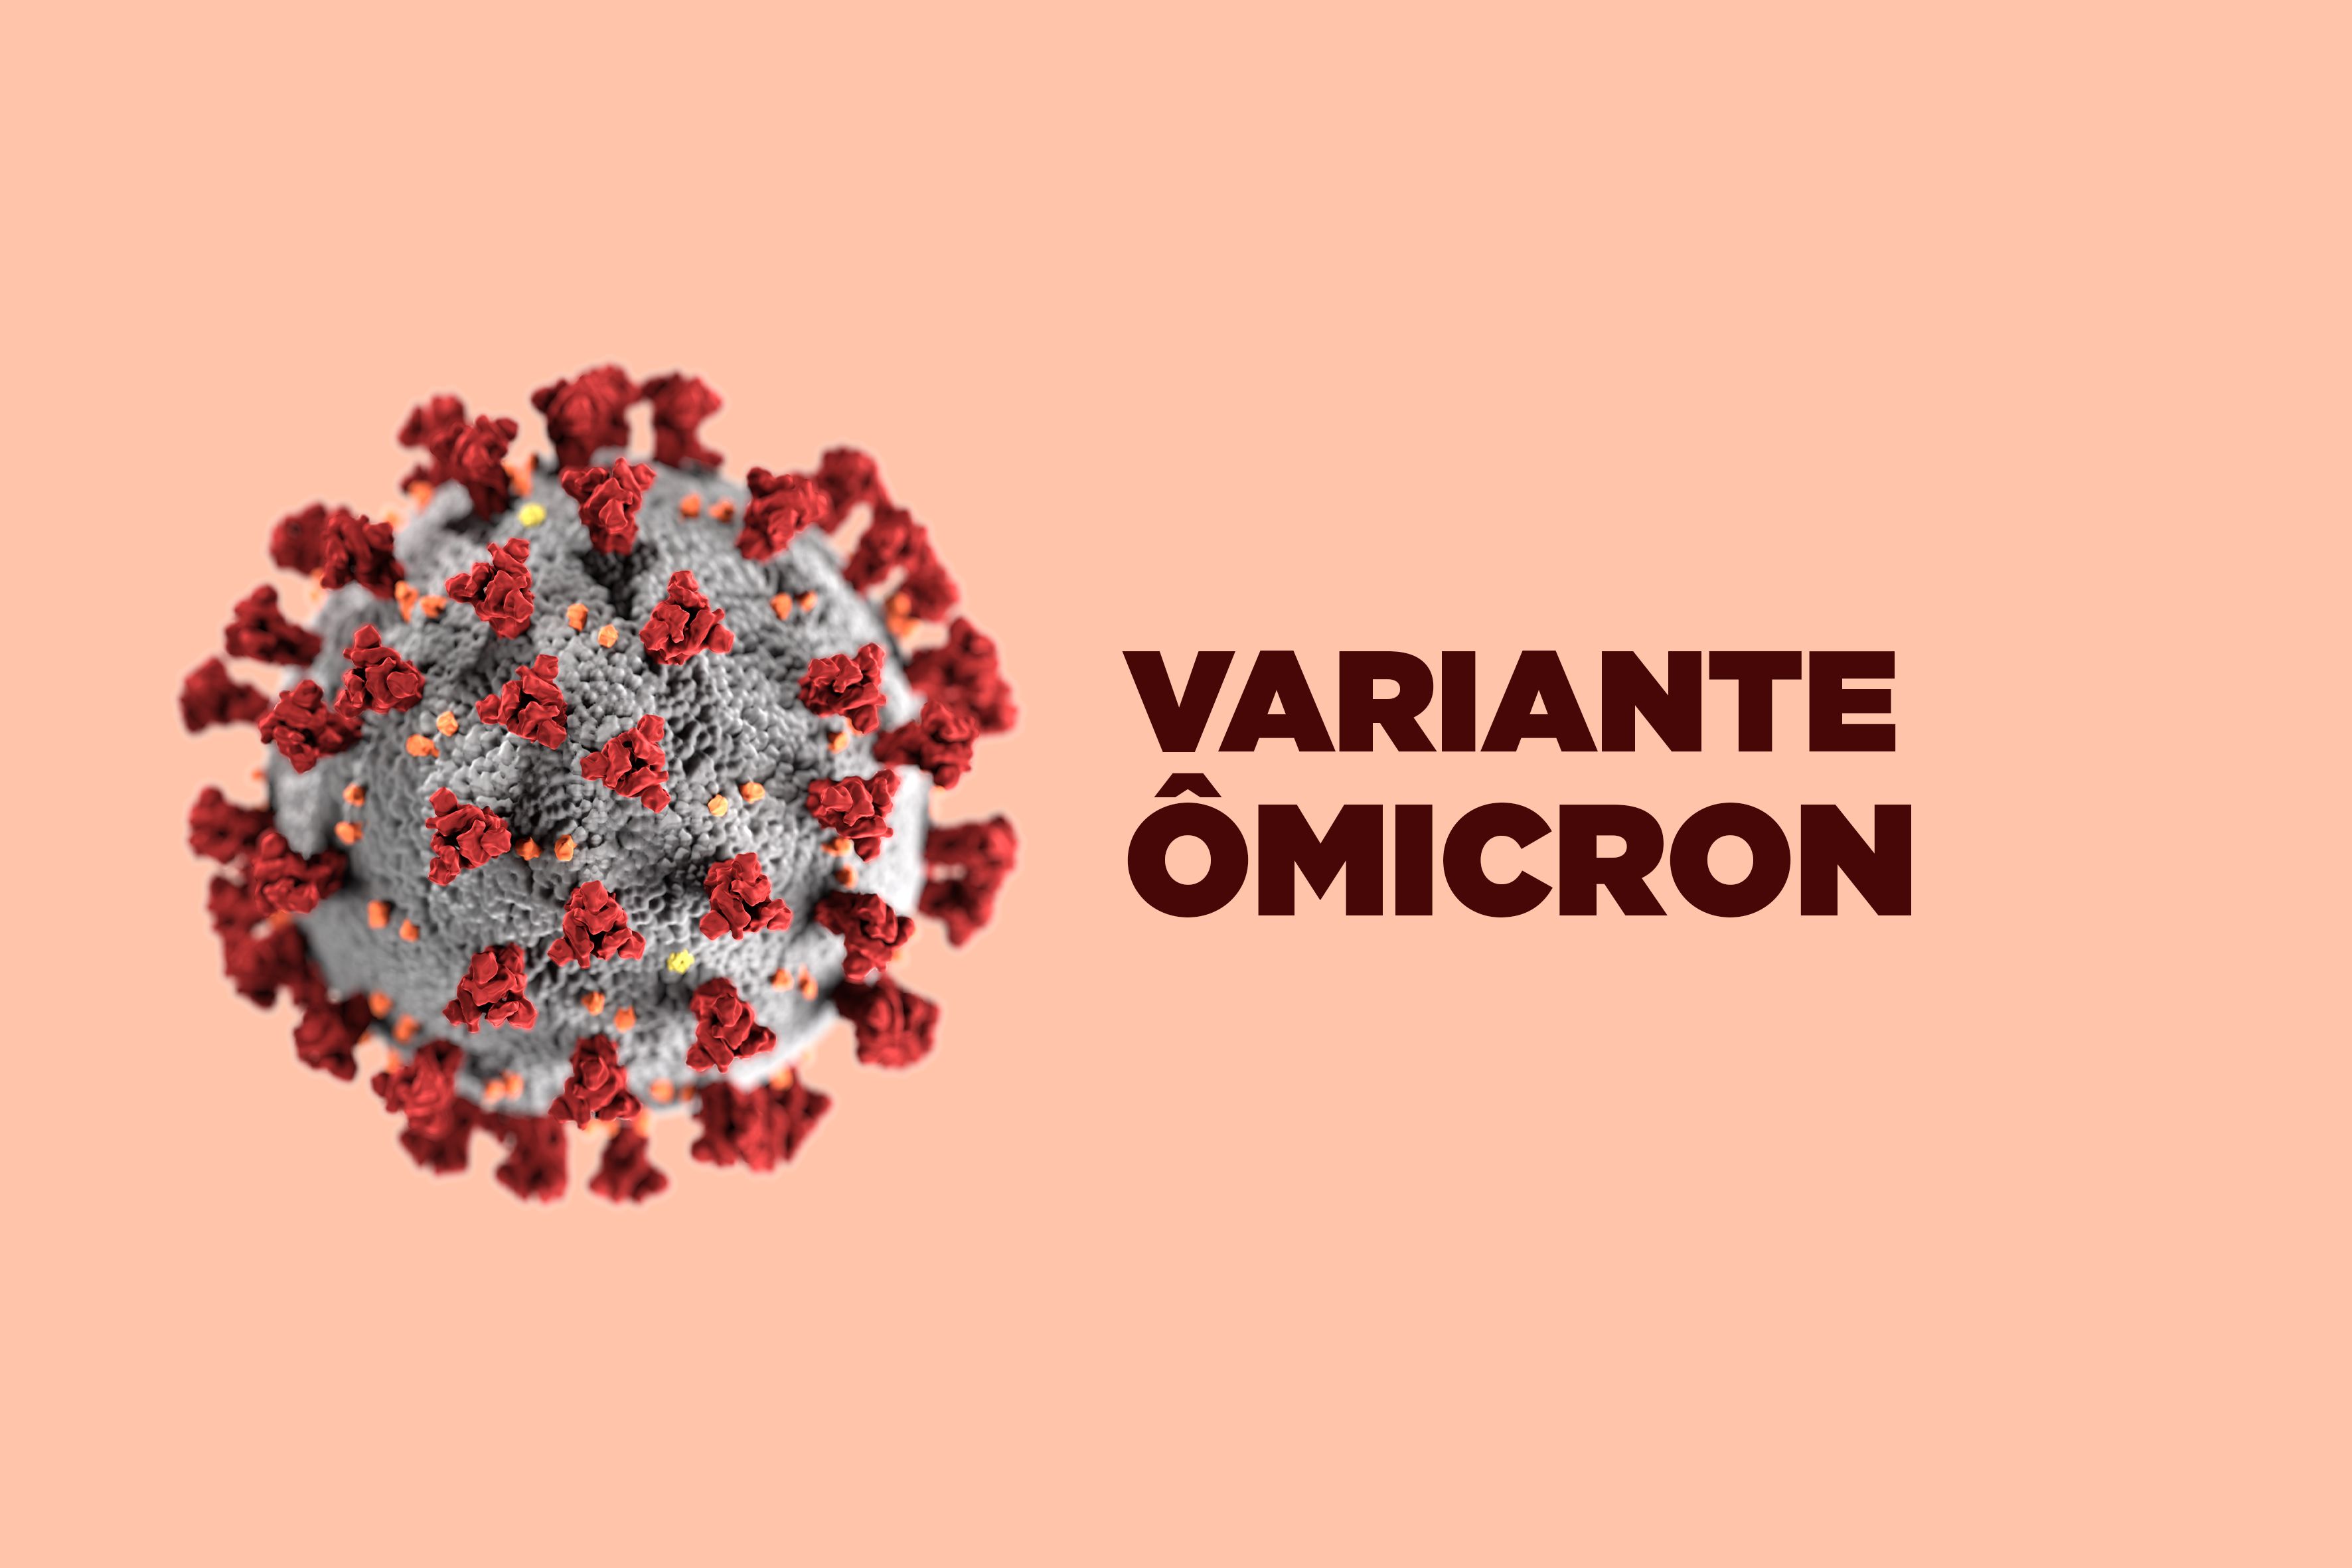 Revide, Dois casos da variante Ômicron são confirmados no Brasil, coronavírus, covid-19, morte, variante, ômicron, variantes, vacina, ribeirão, preto, confirmado 